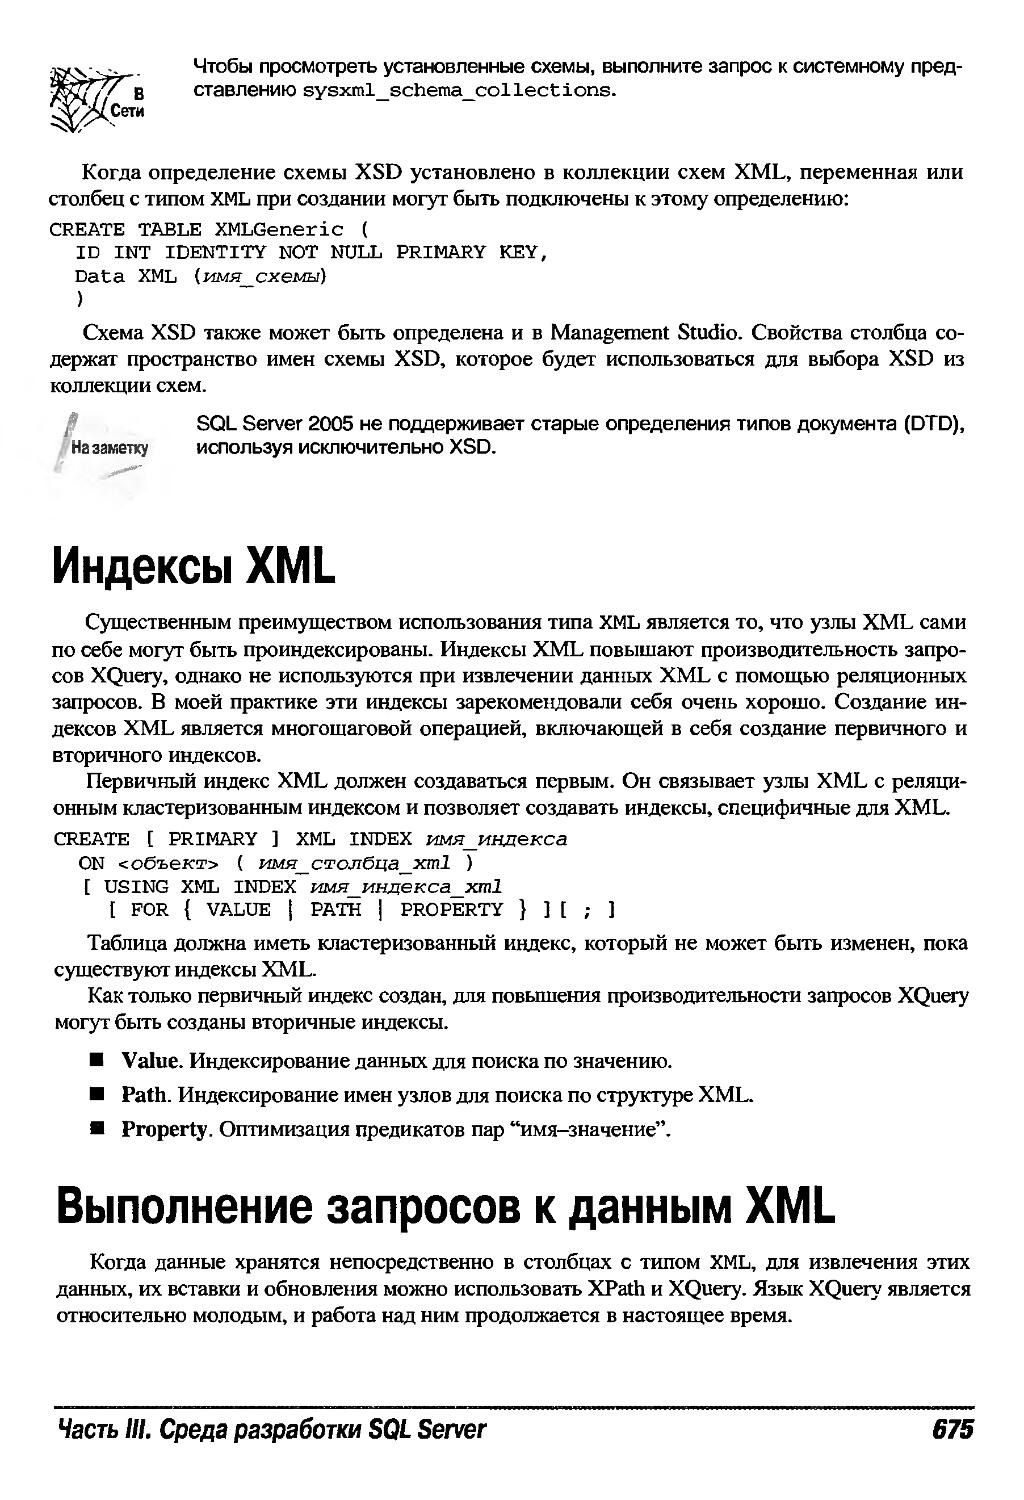 Индексы XML
Выполнение запросов к данным XML